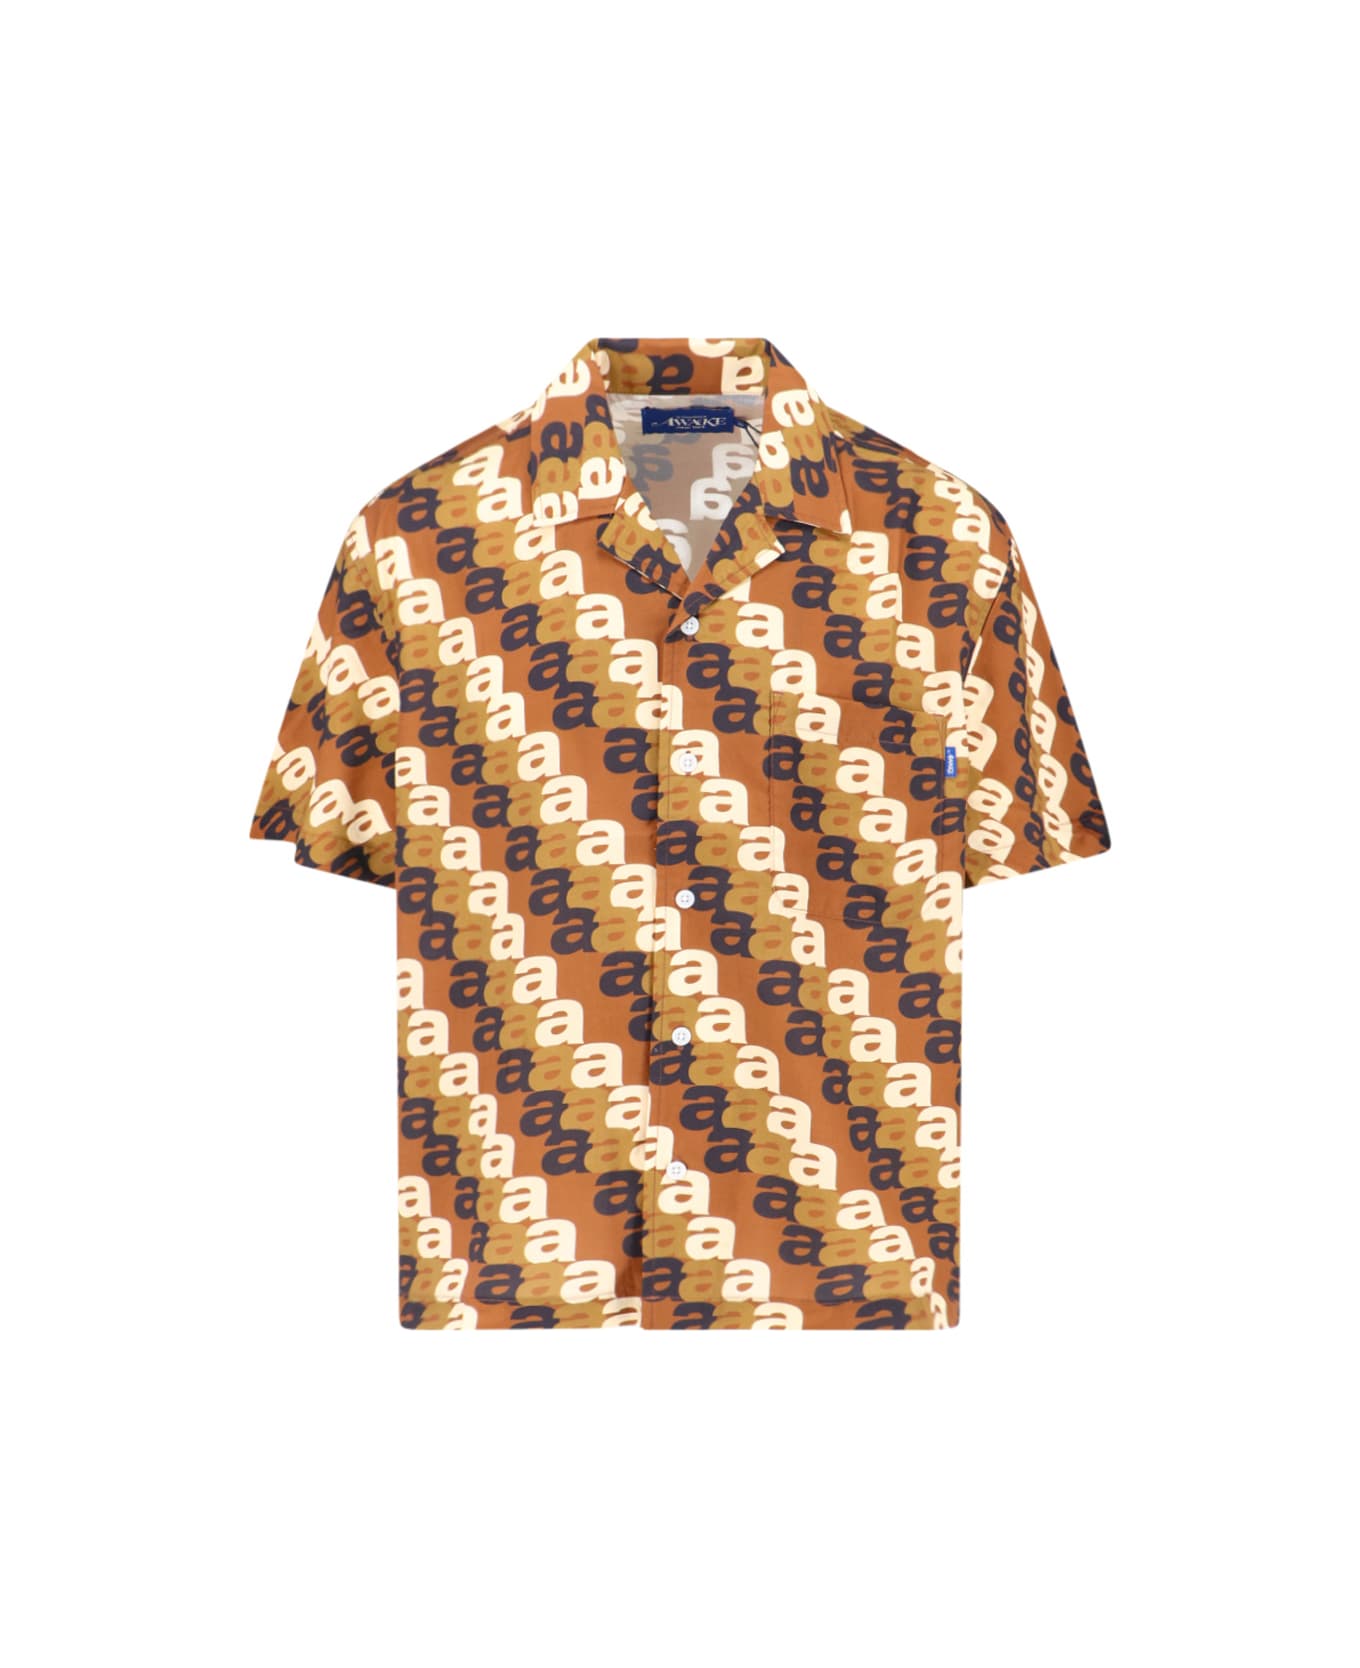 Awake NY 'triple A Camp' Shirt - Brown シャツ